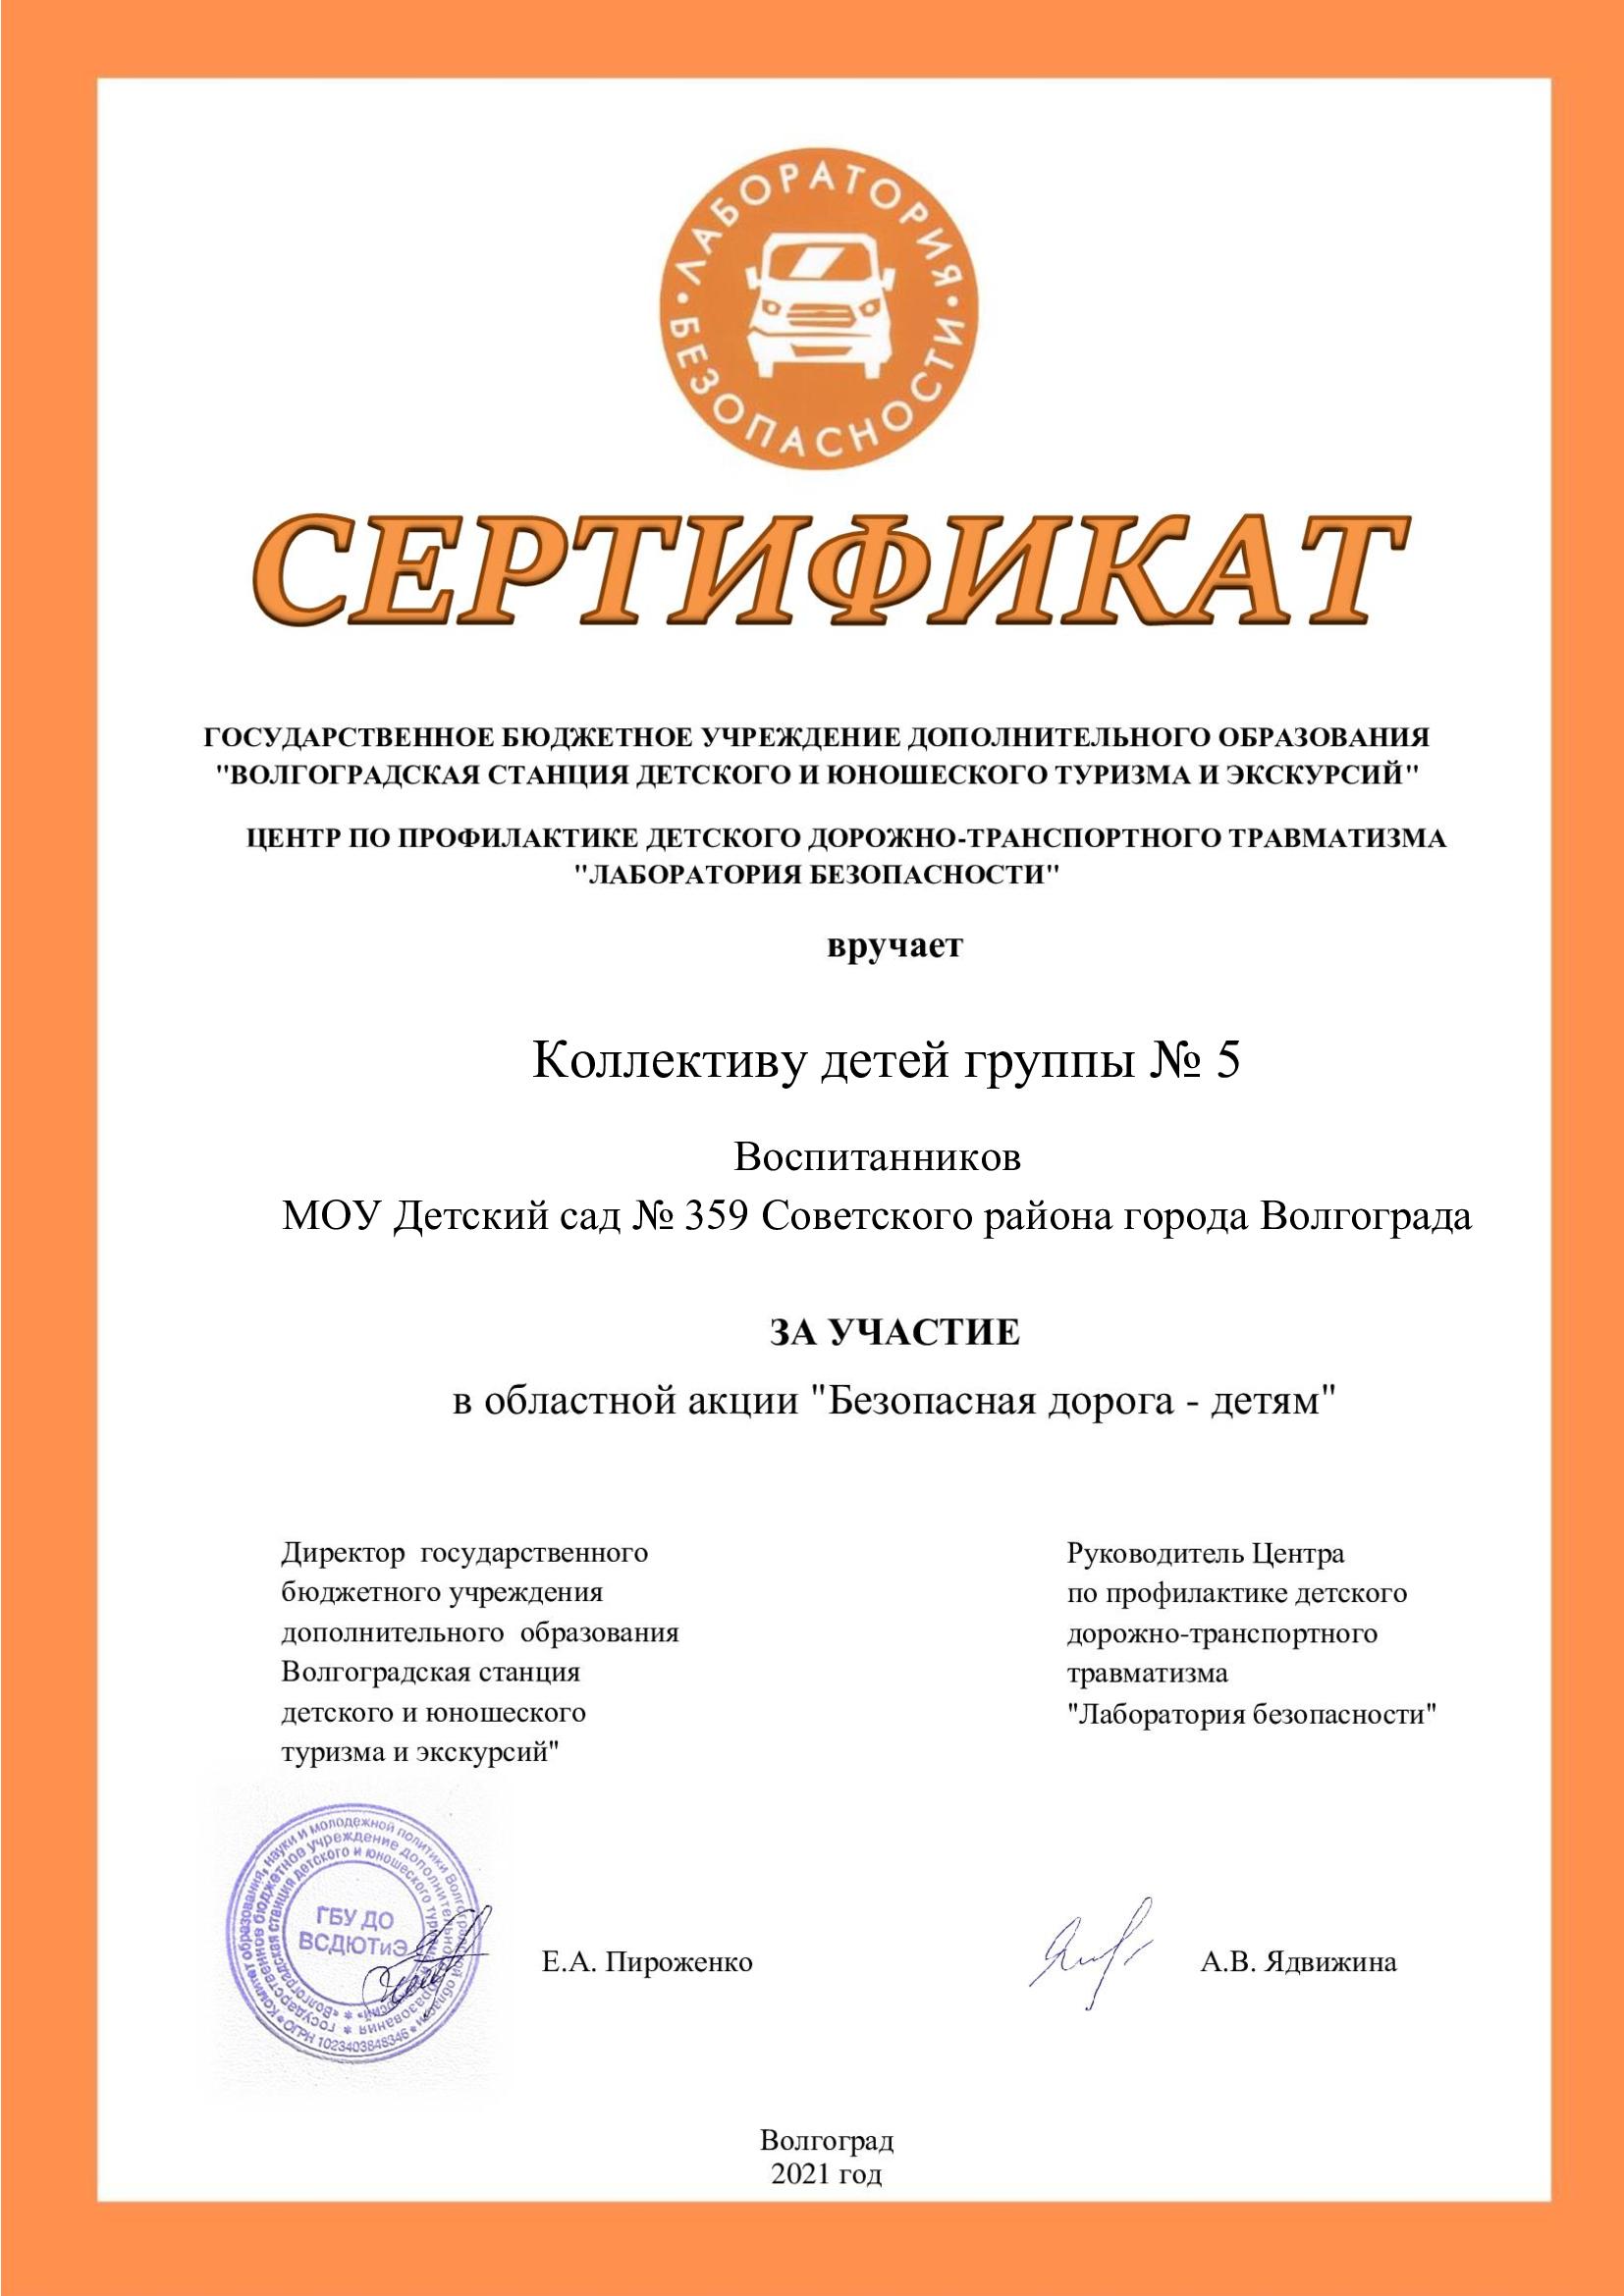 Сертификат-Безопасная-дорога-детям.jpg